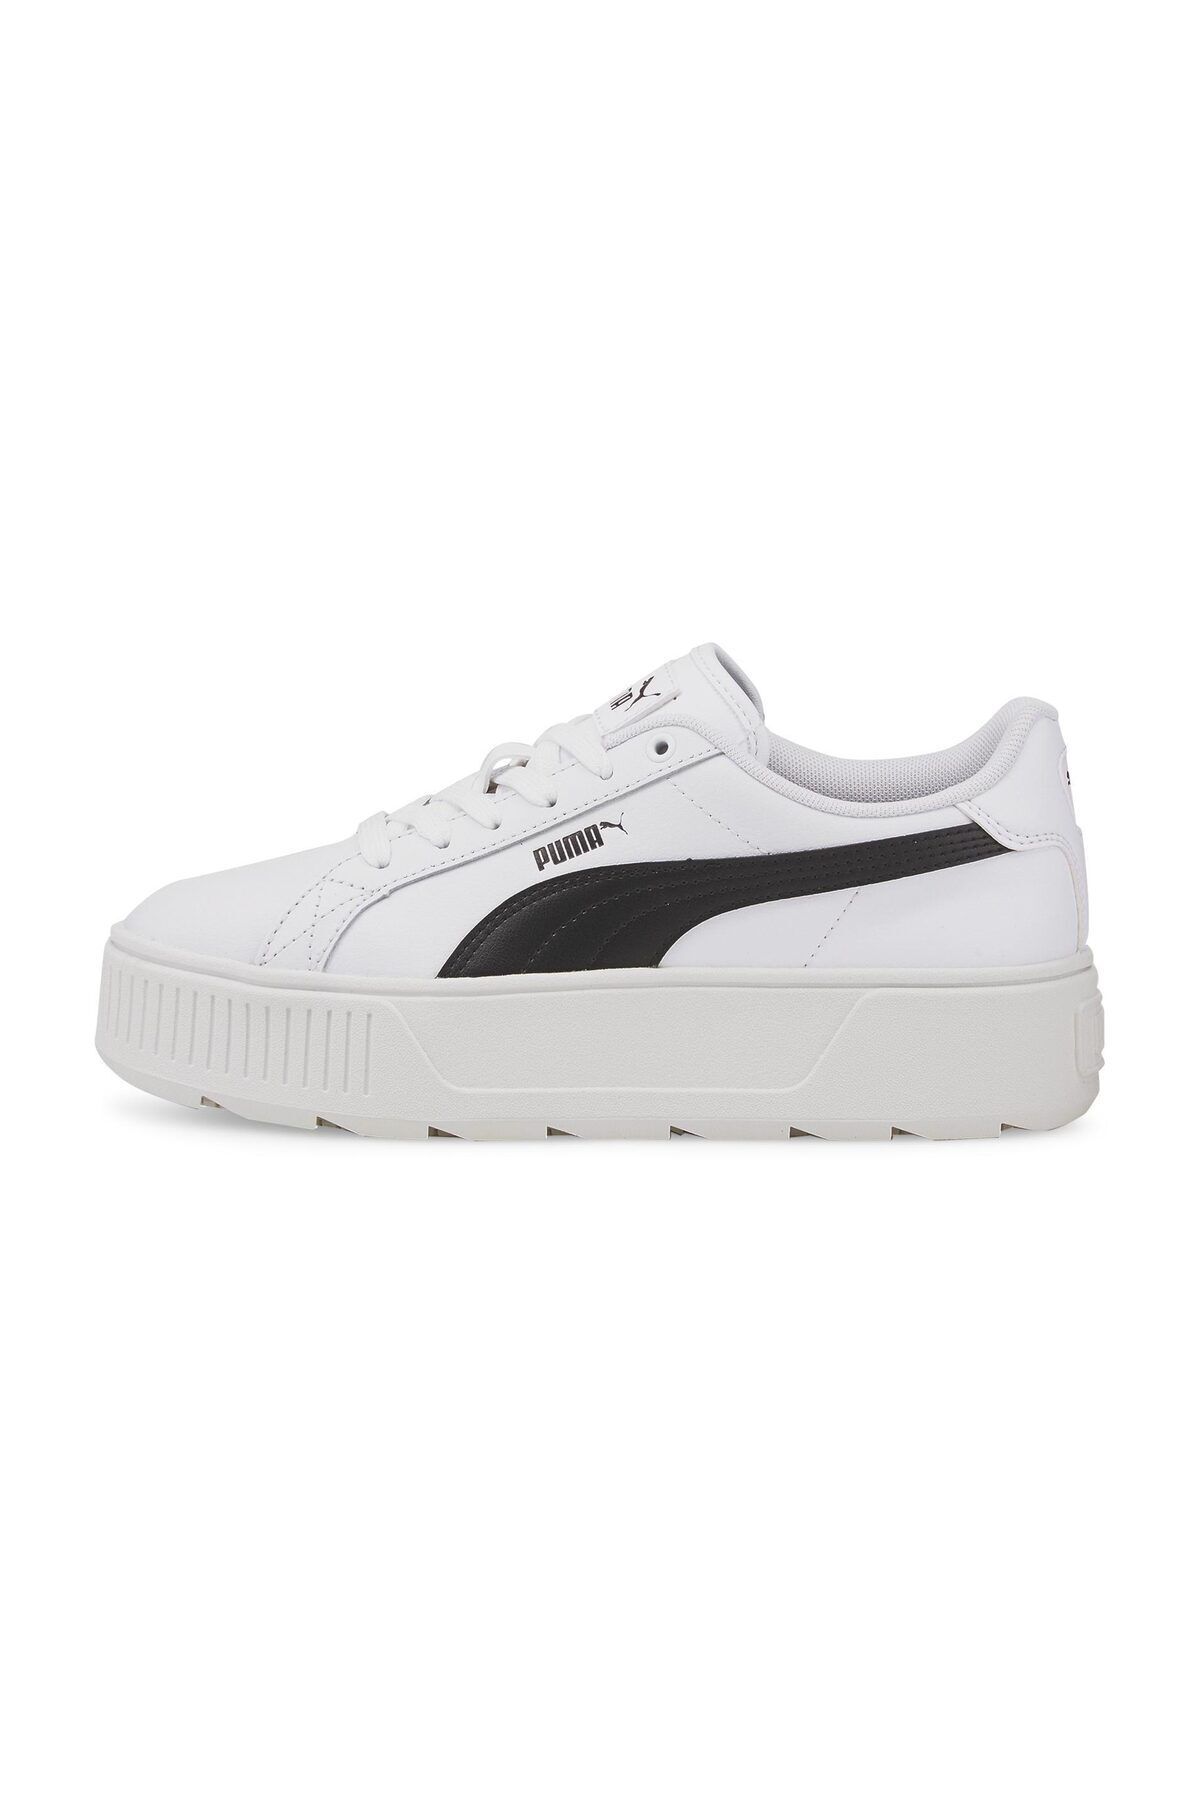 Puma Beyaz - Karmen L Kadın Yüksek Taban Sneaker Ayakkabı 38461502